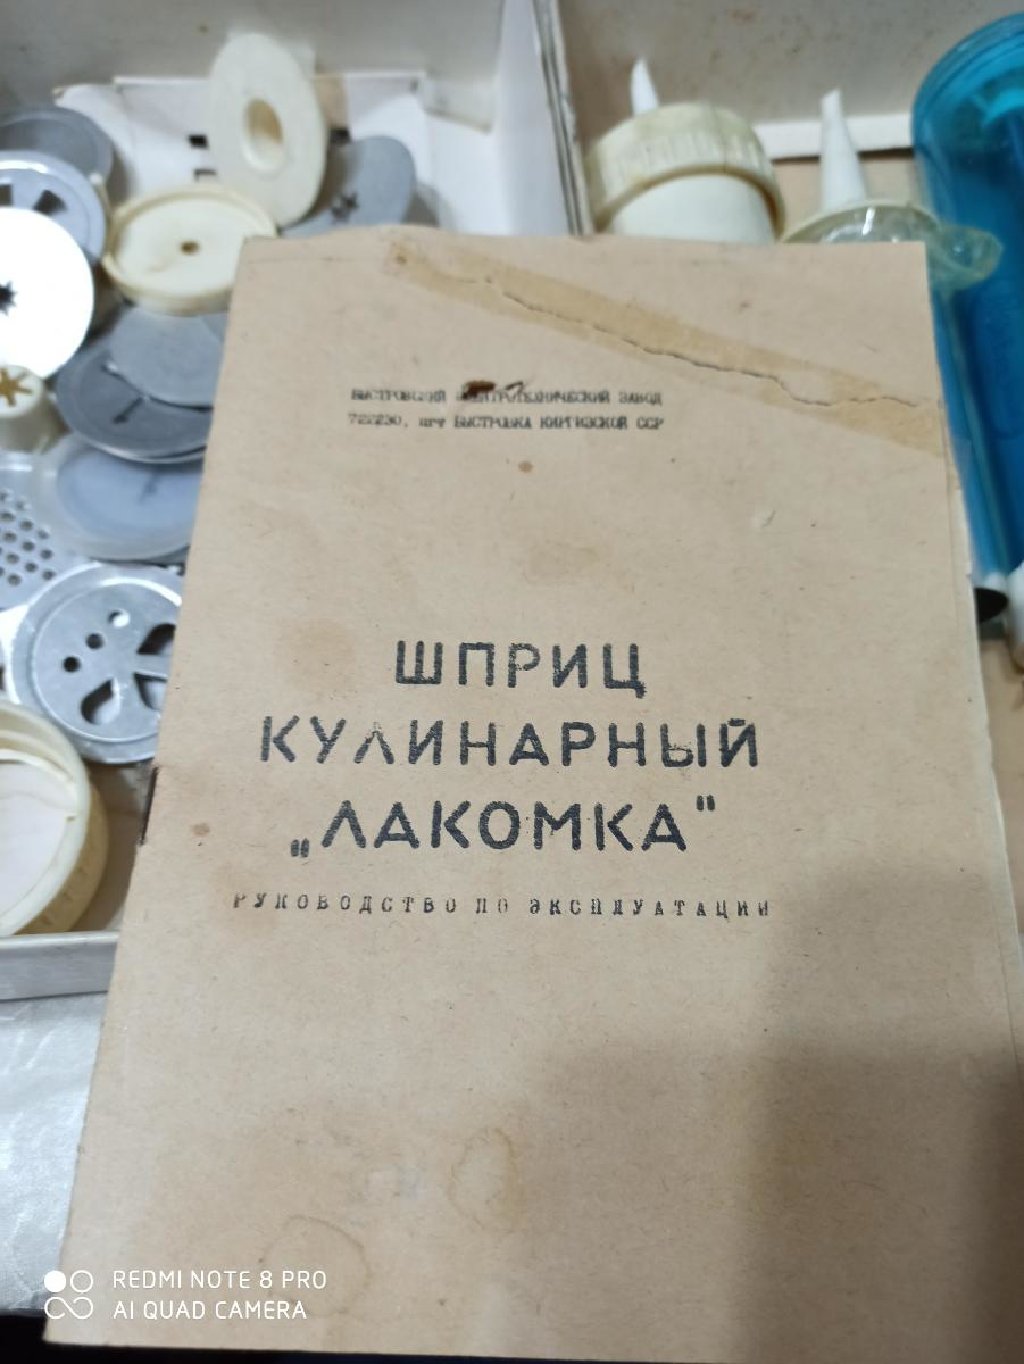 Шприц кулинарный «Лакомка» производство: Киргизская ССР.